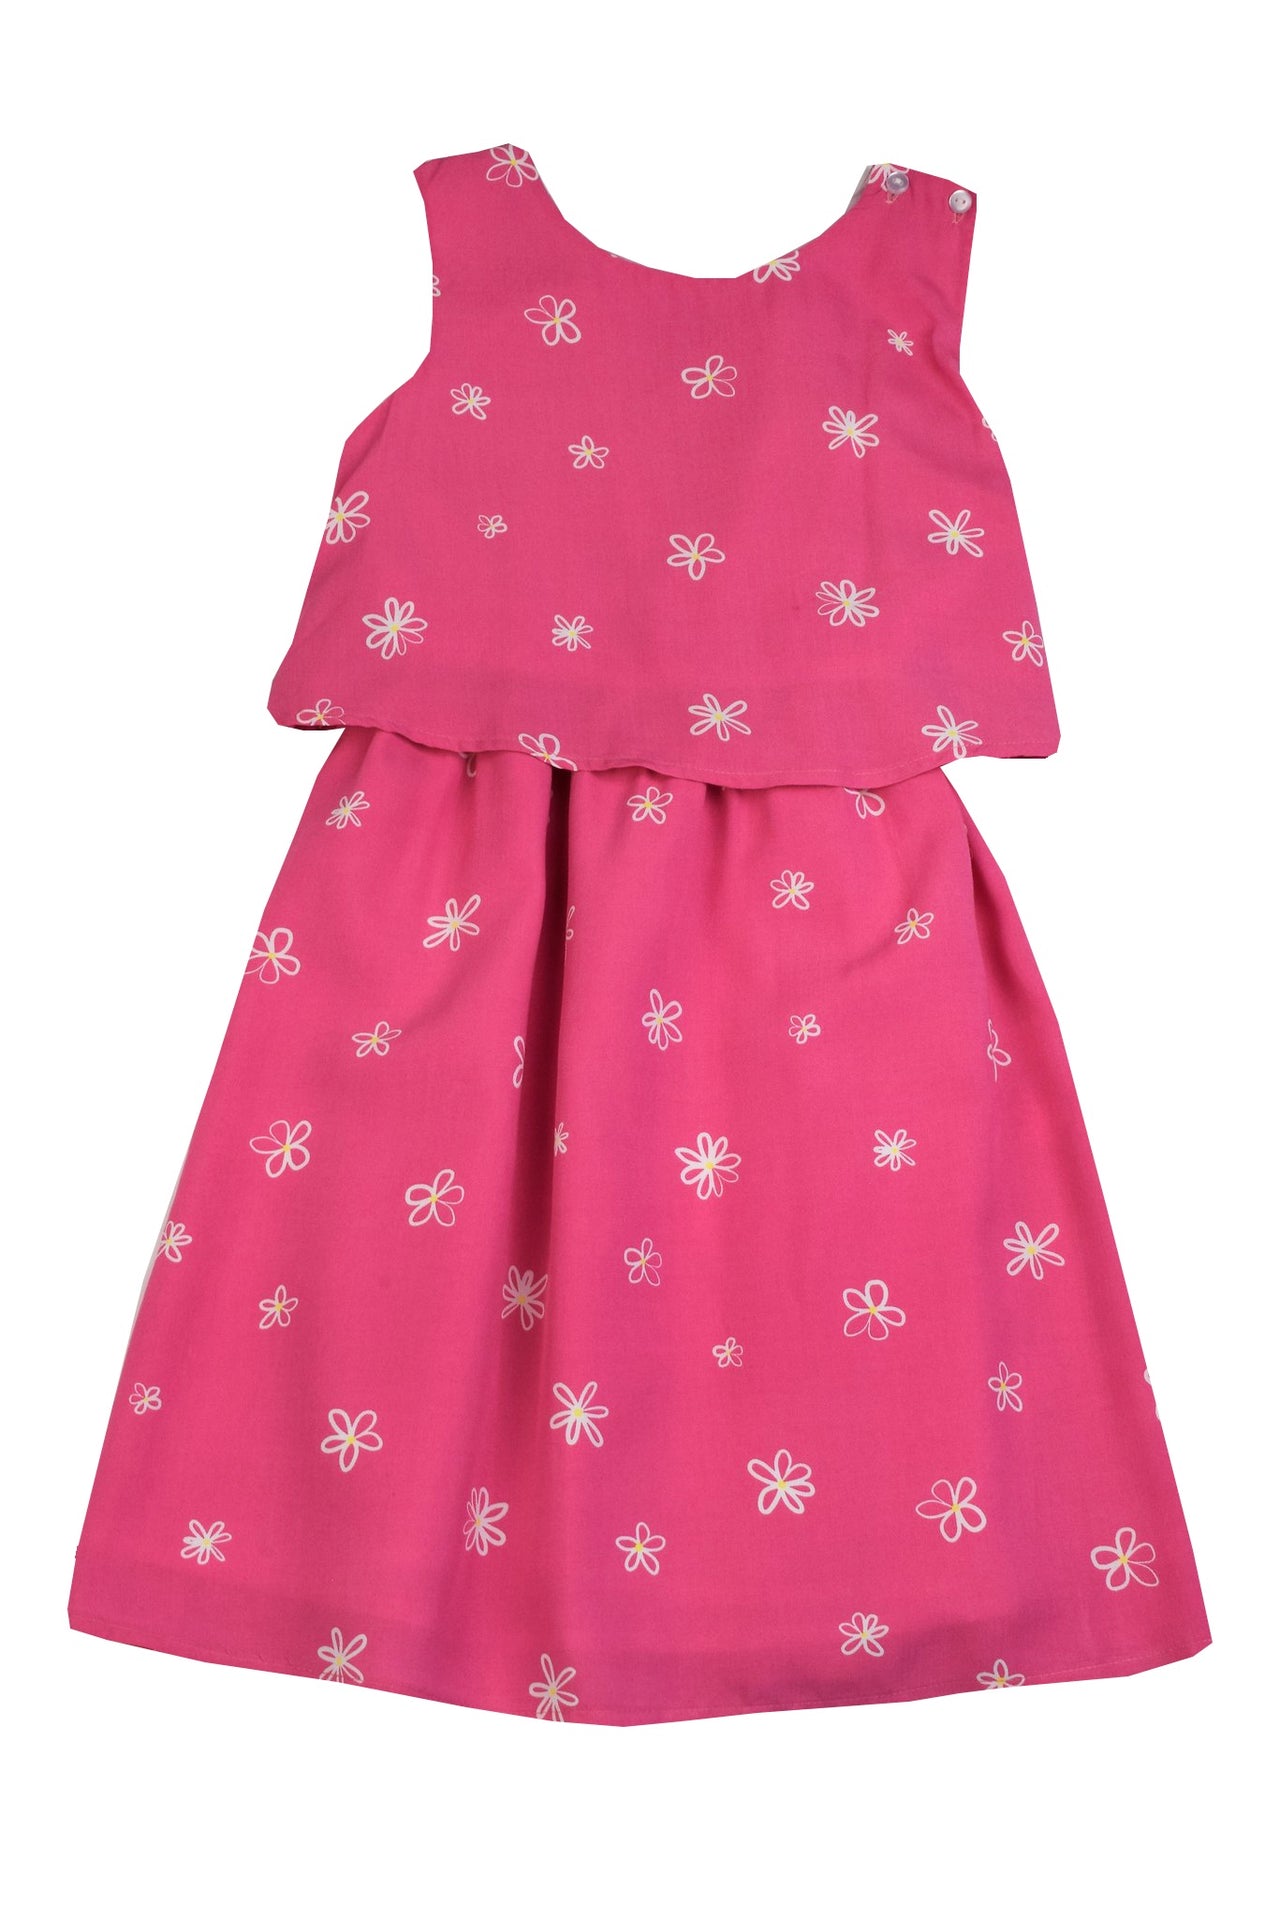 Maggie Breen Hot Pink Dress Flowers 16163